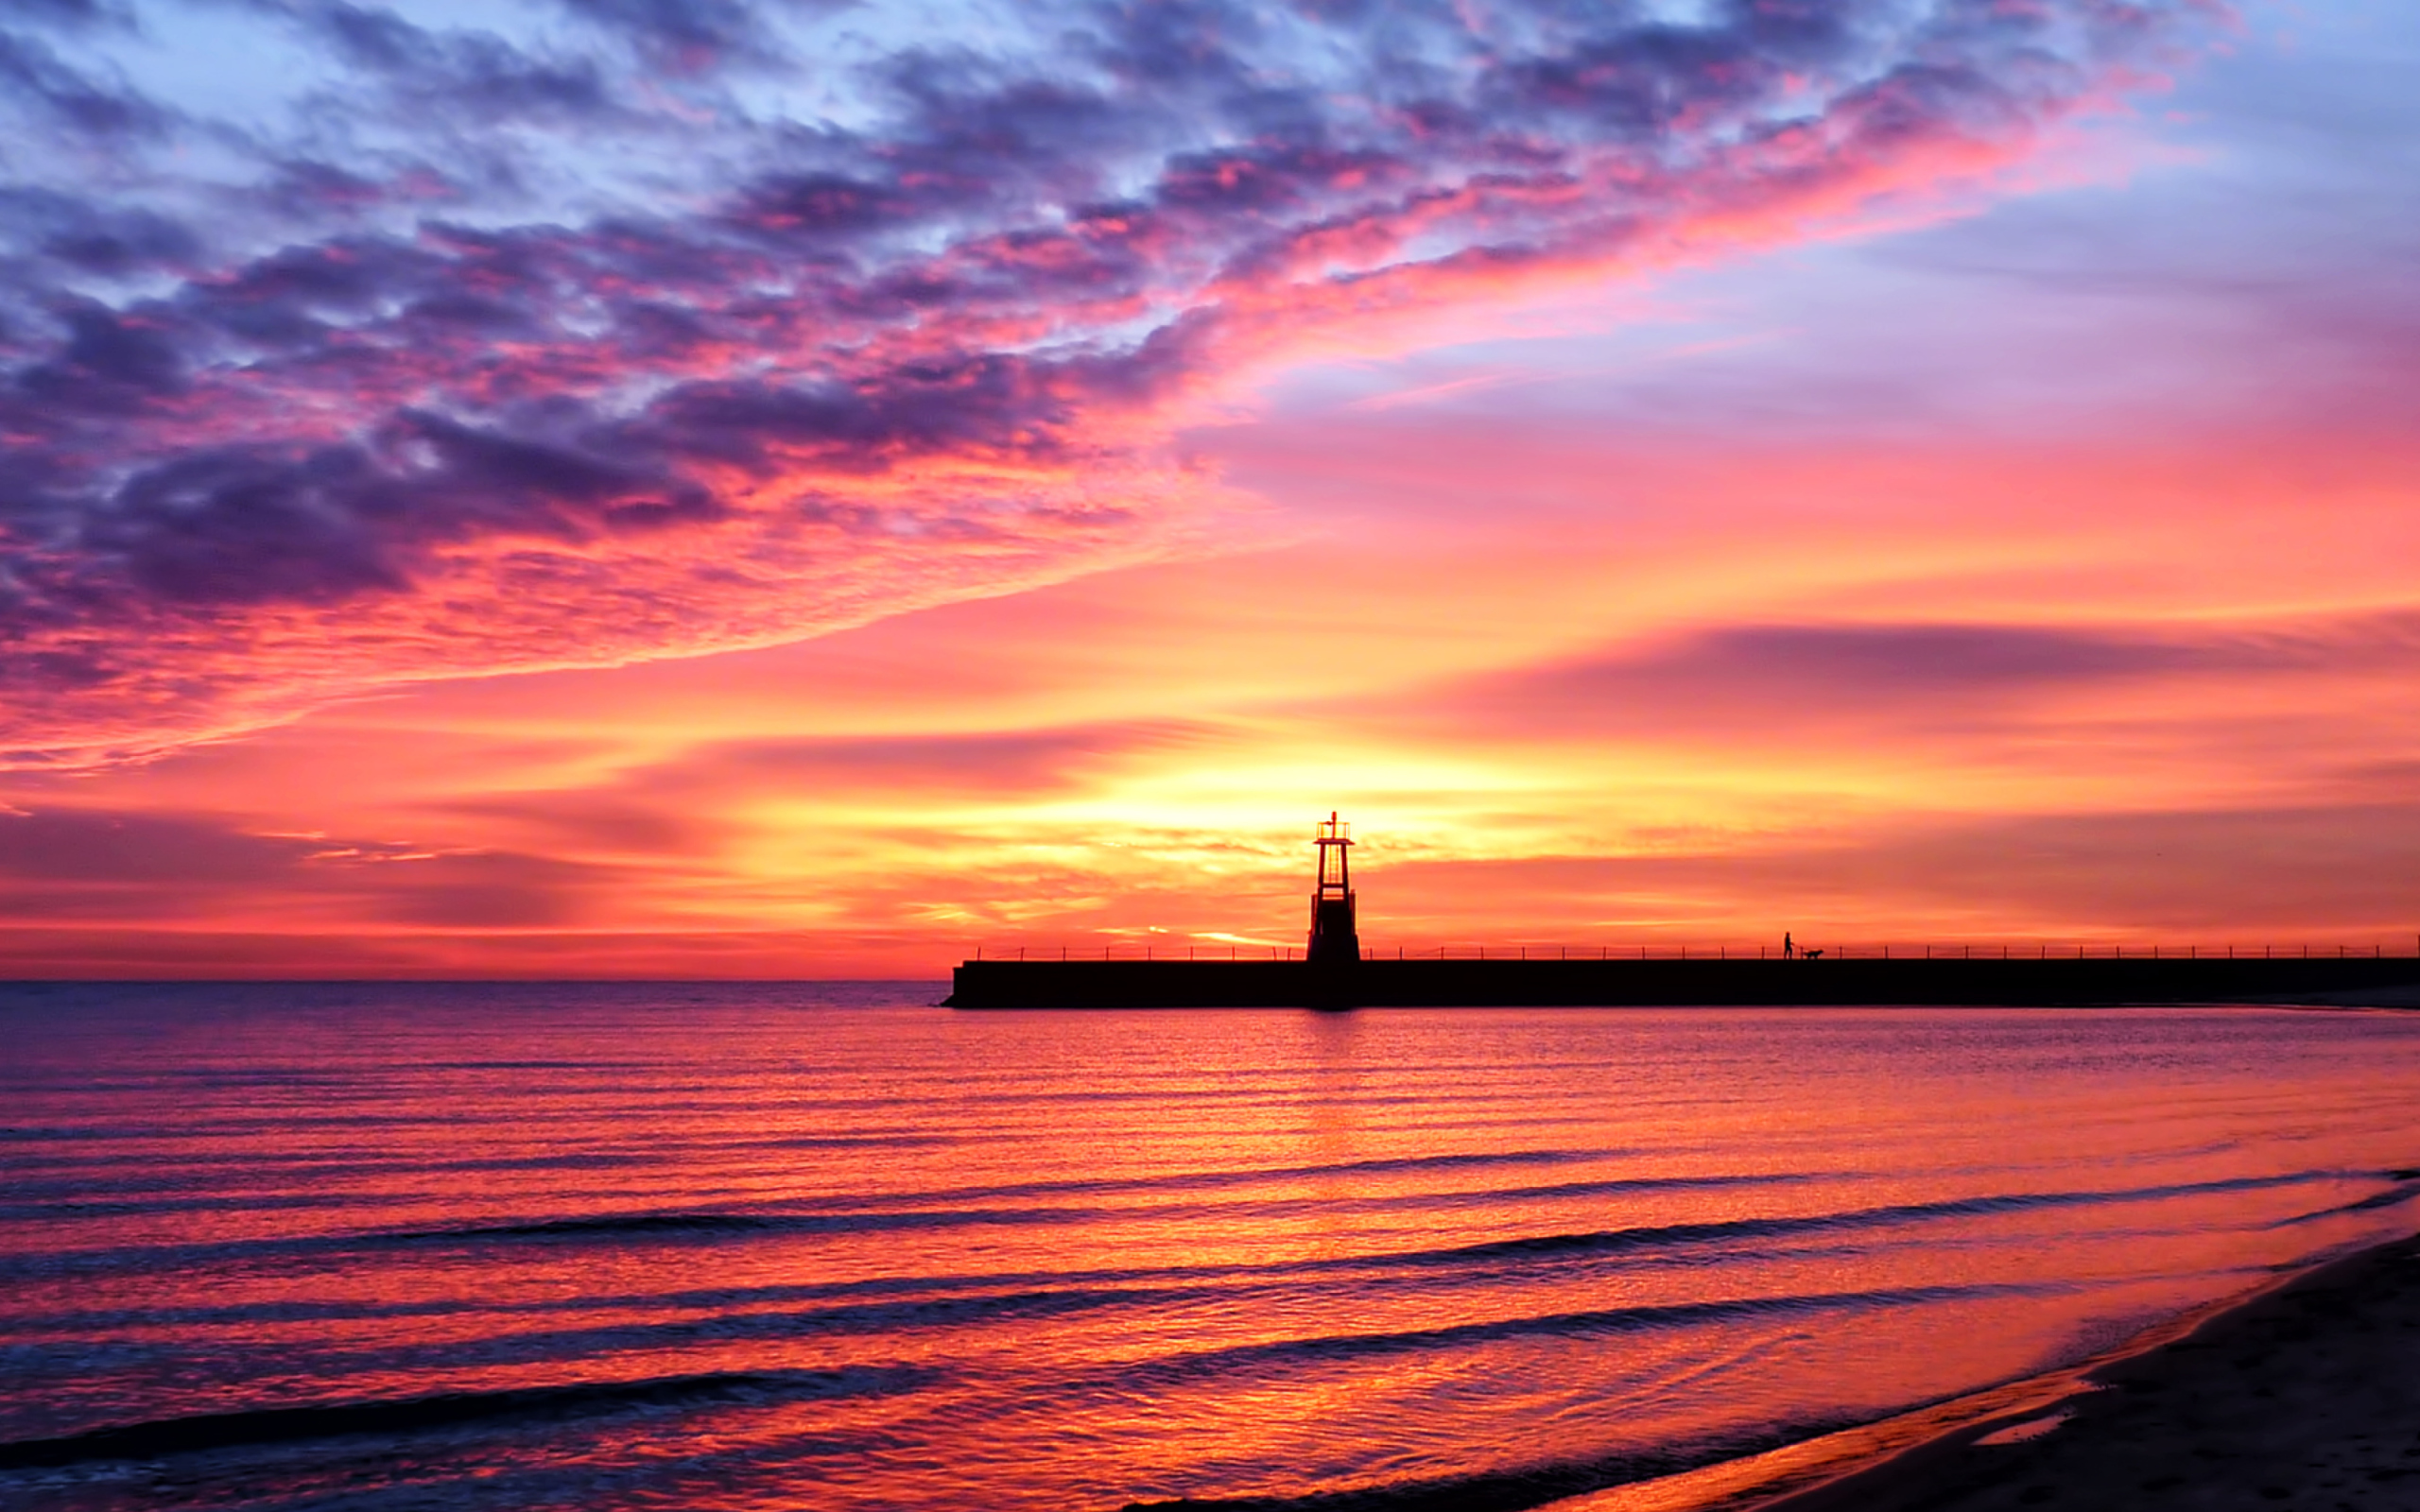 Обои Lighthouse And Red Sunset Beach 2560x1600